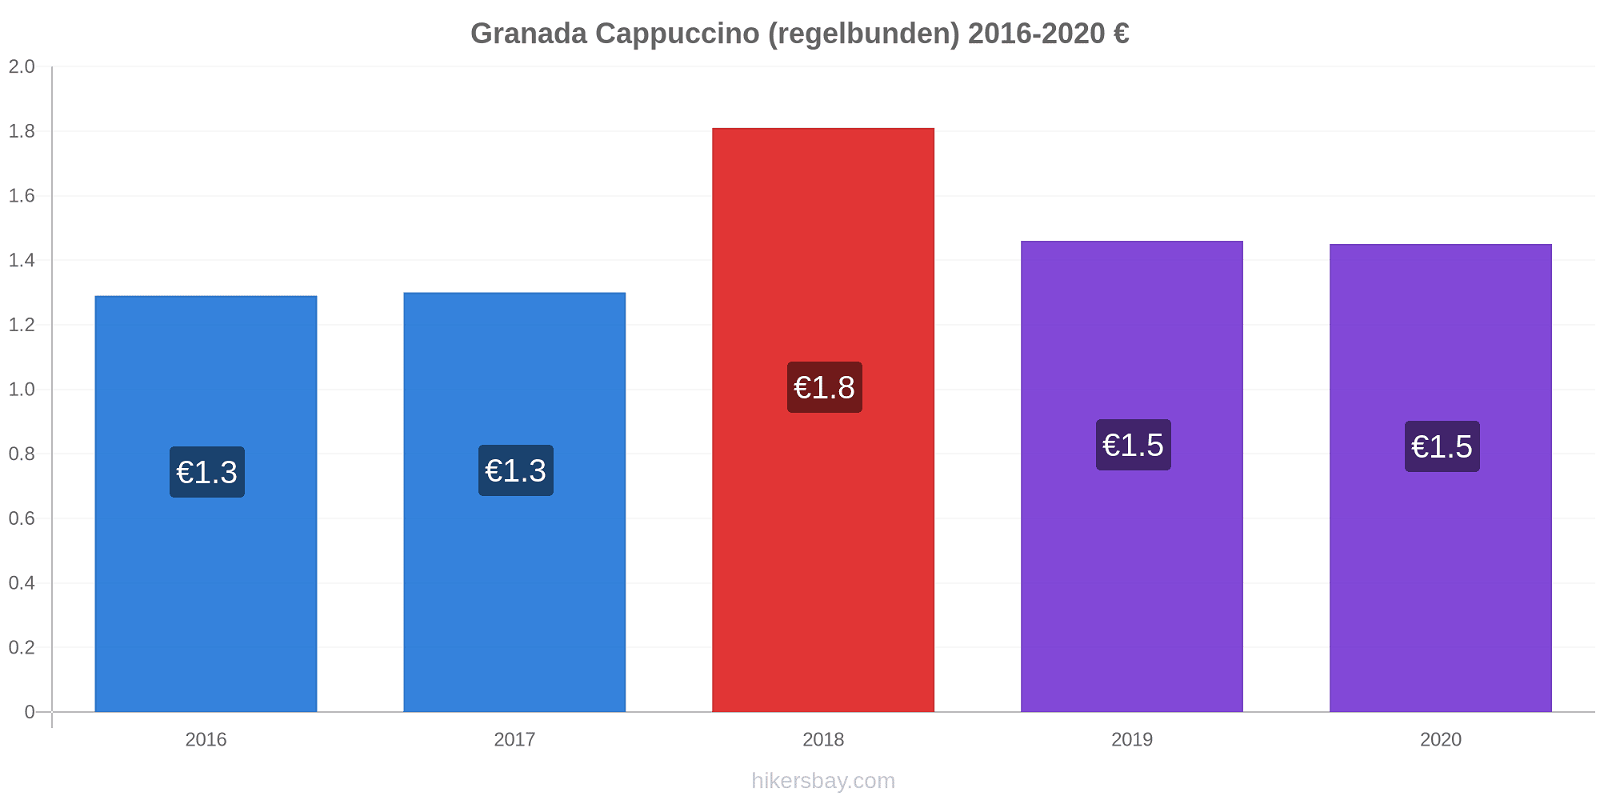 Granada prisförändringar Cappuccino (regelbunden) hikersbay.com